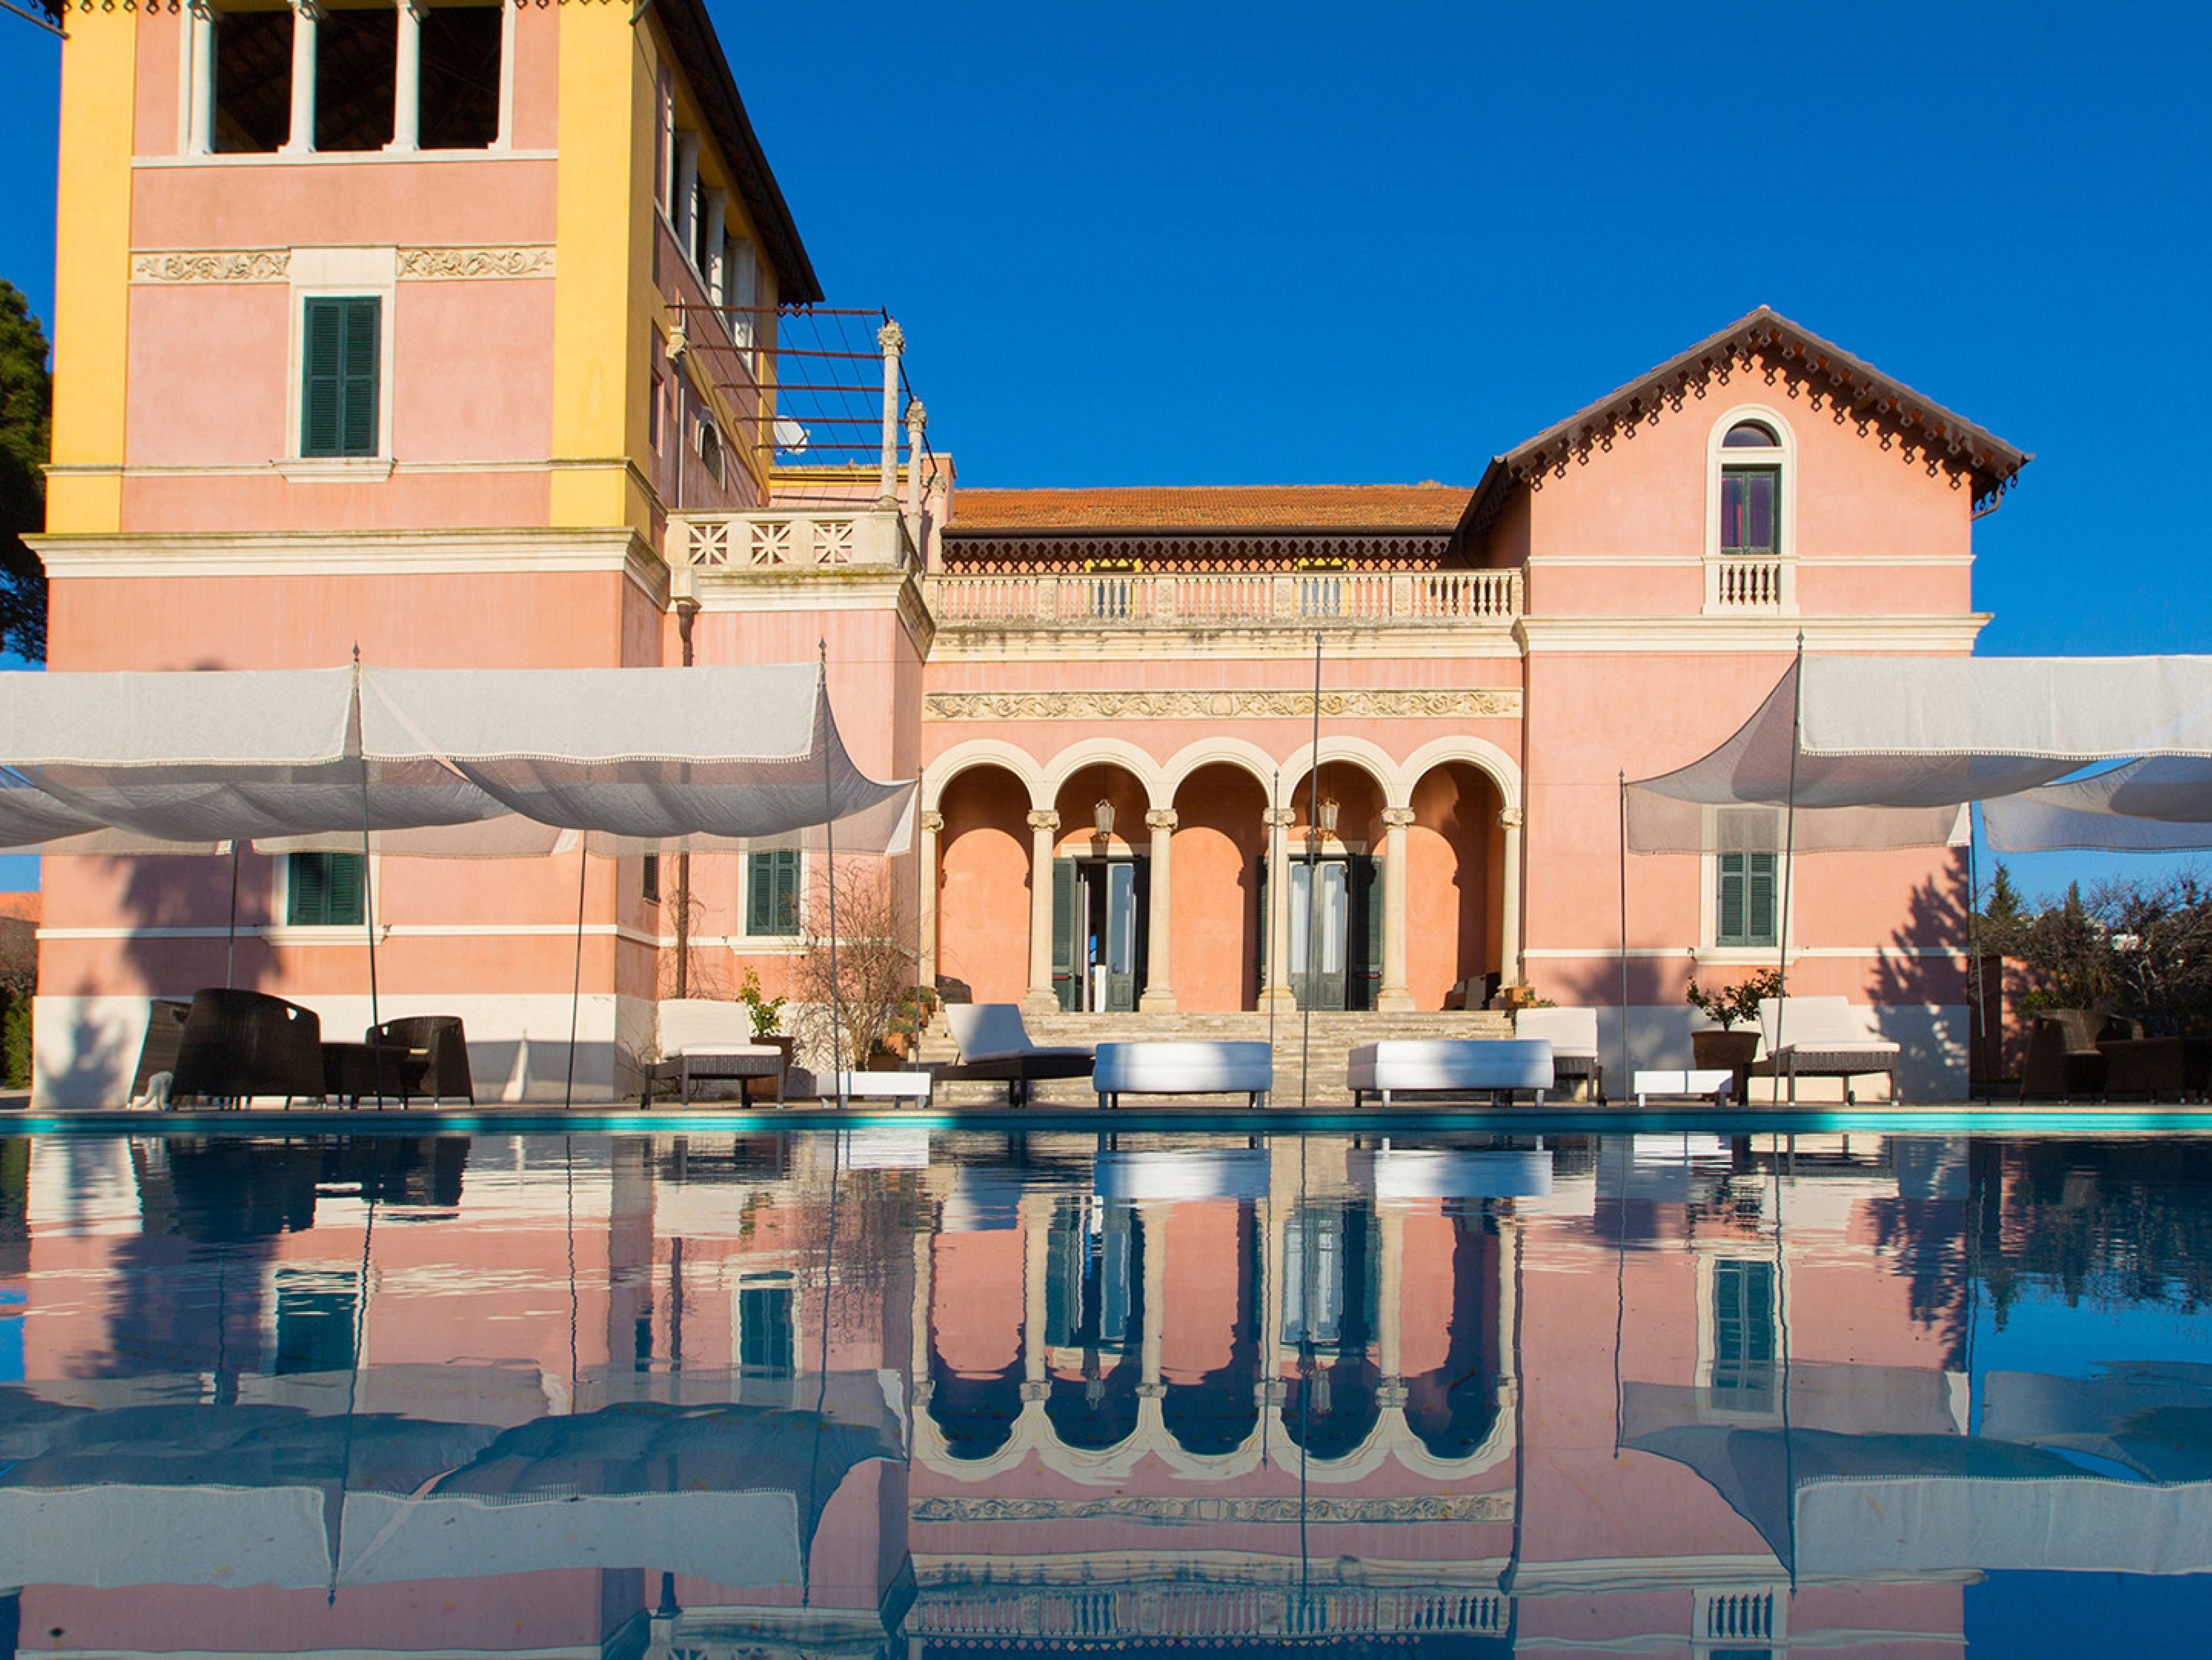 Villa Capozza summer home rentals with pools